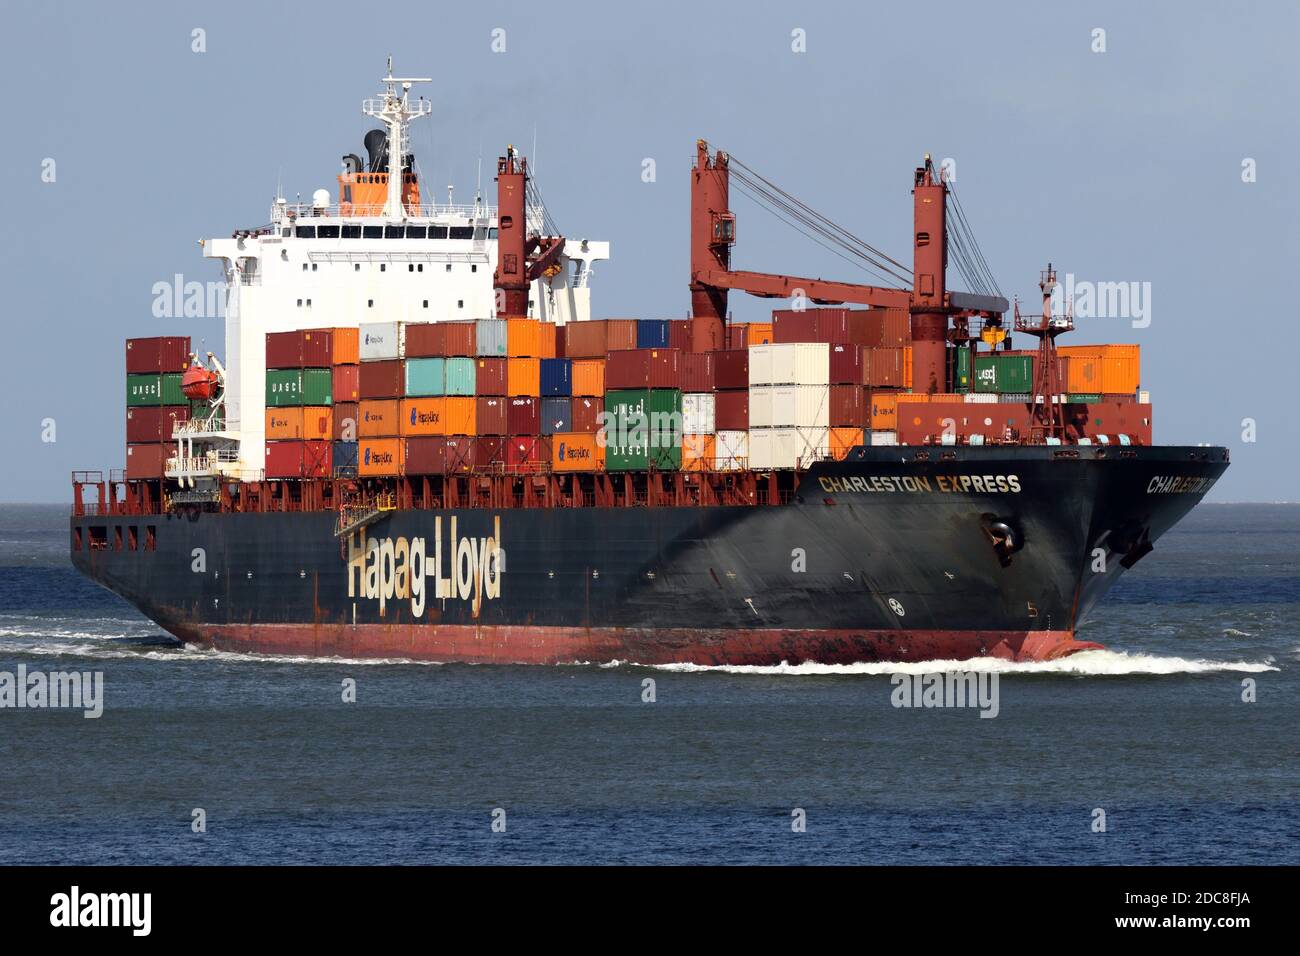 El buque de contenedores Charleston Express pasará por Cuxhaven el 22 de agosto de 2020 en su camino a Hamburgo. Foto de stock